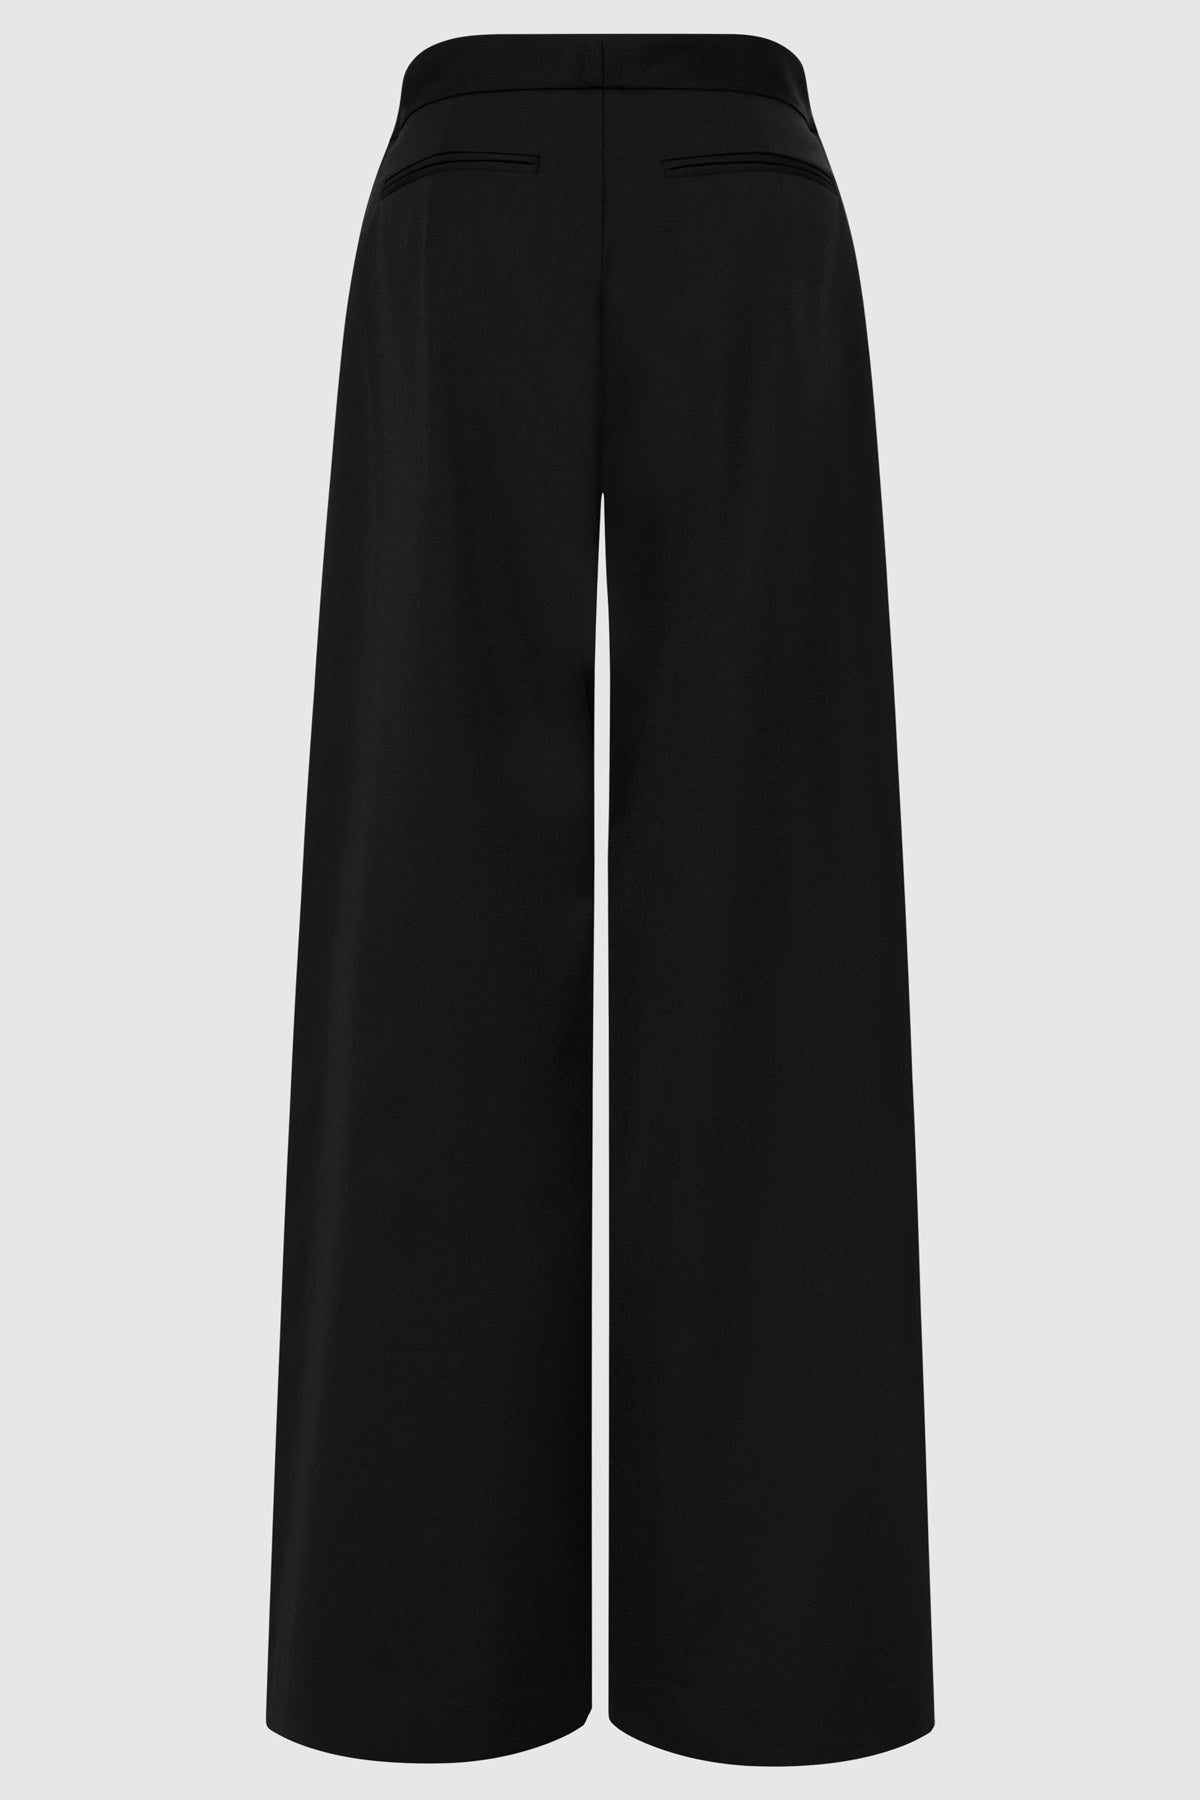 St Agni | Fold Trousers - Black